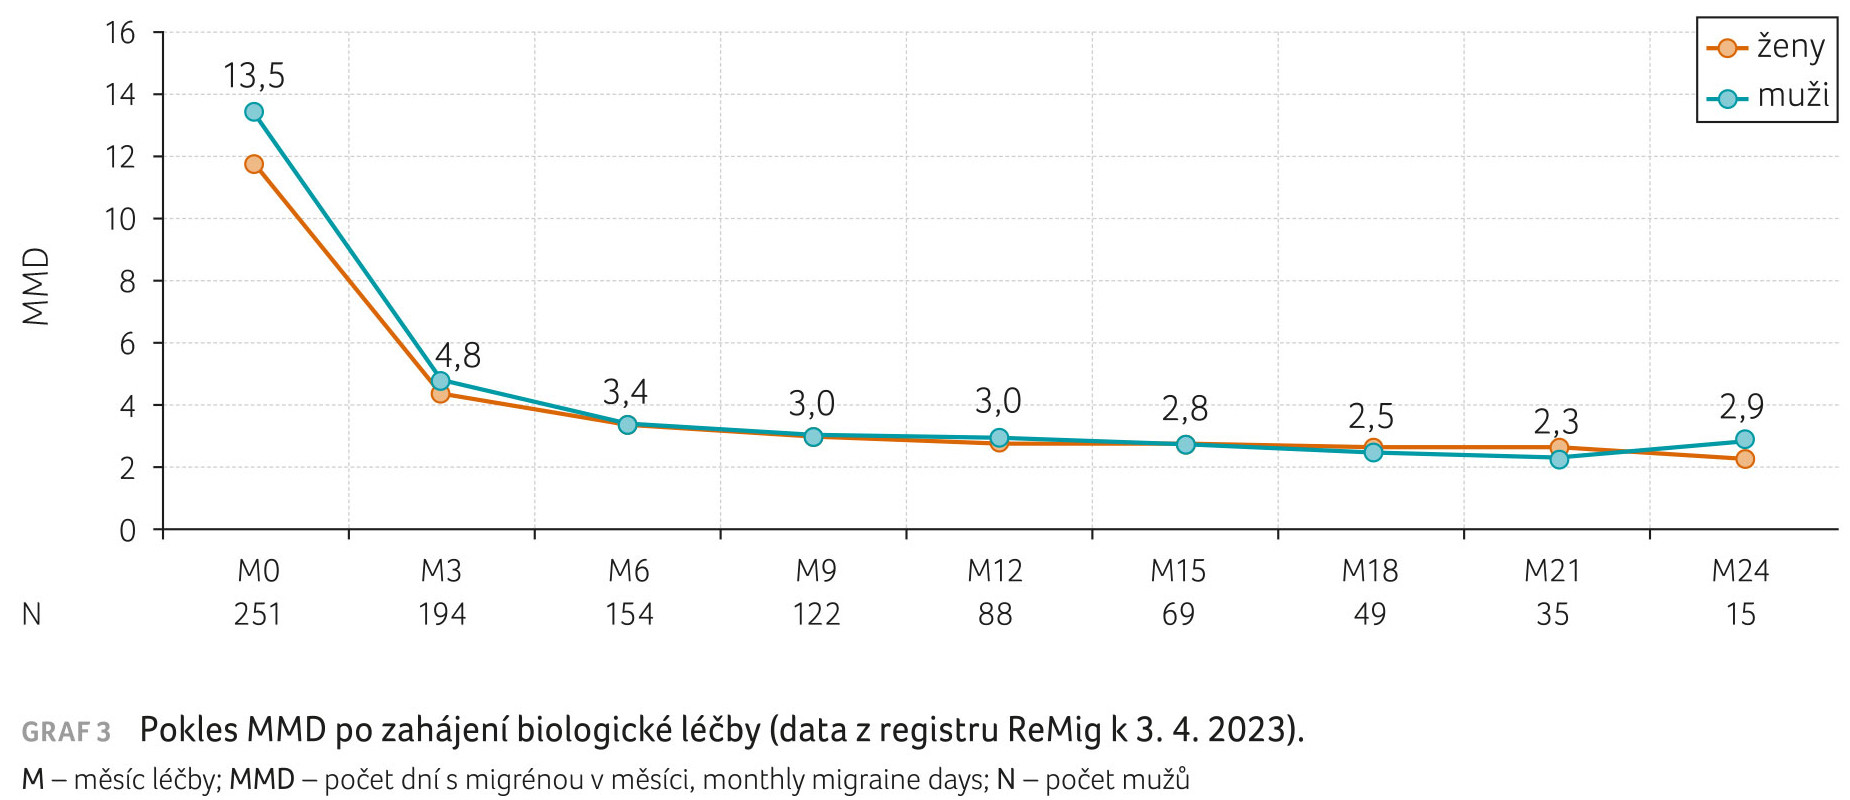 GRAF 3 Pokles MMD po zahájení biologické léčby (data z registru ReMig k 3. 4. 2023). M – měsíc léčby; MMD – počet dní s migrénou v měsíci, monthly migraine days; N – počet mužů